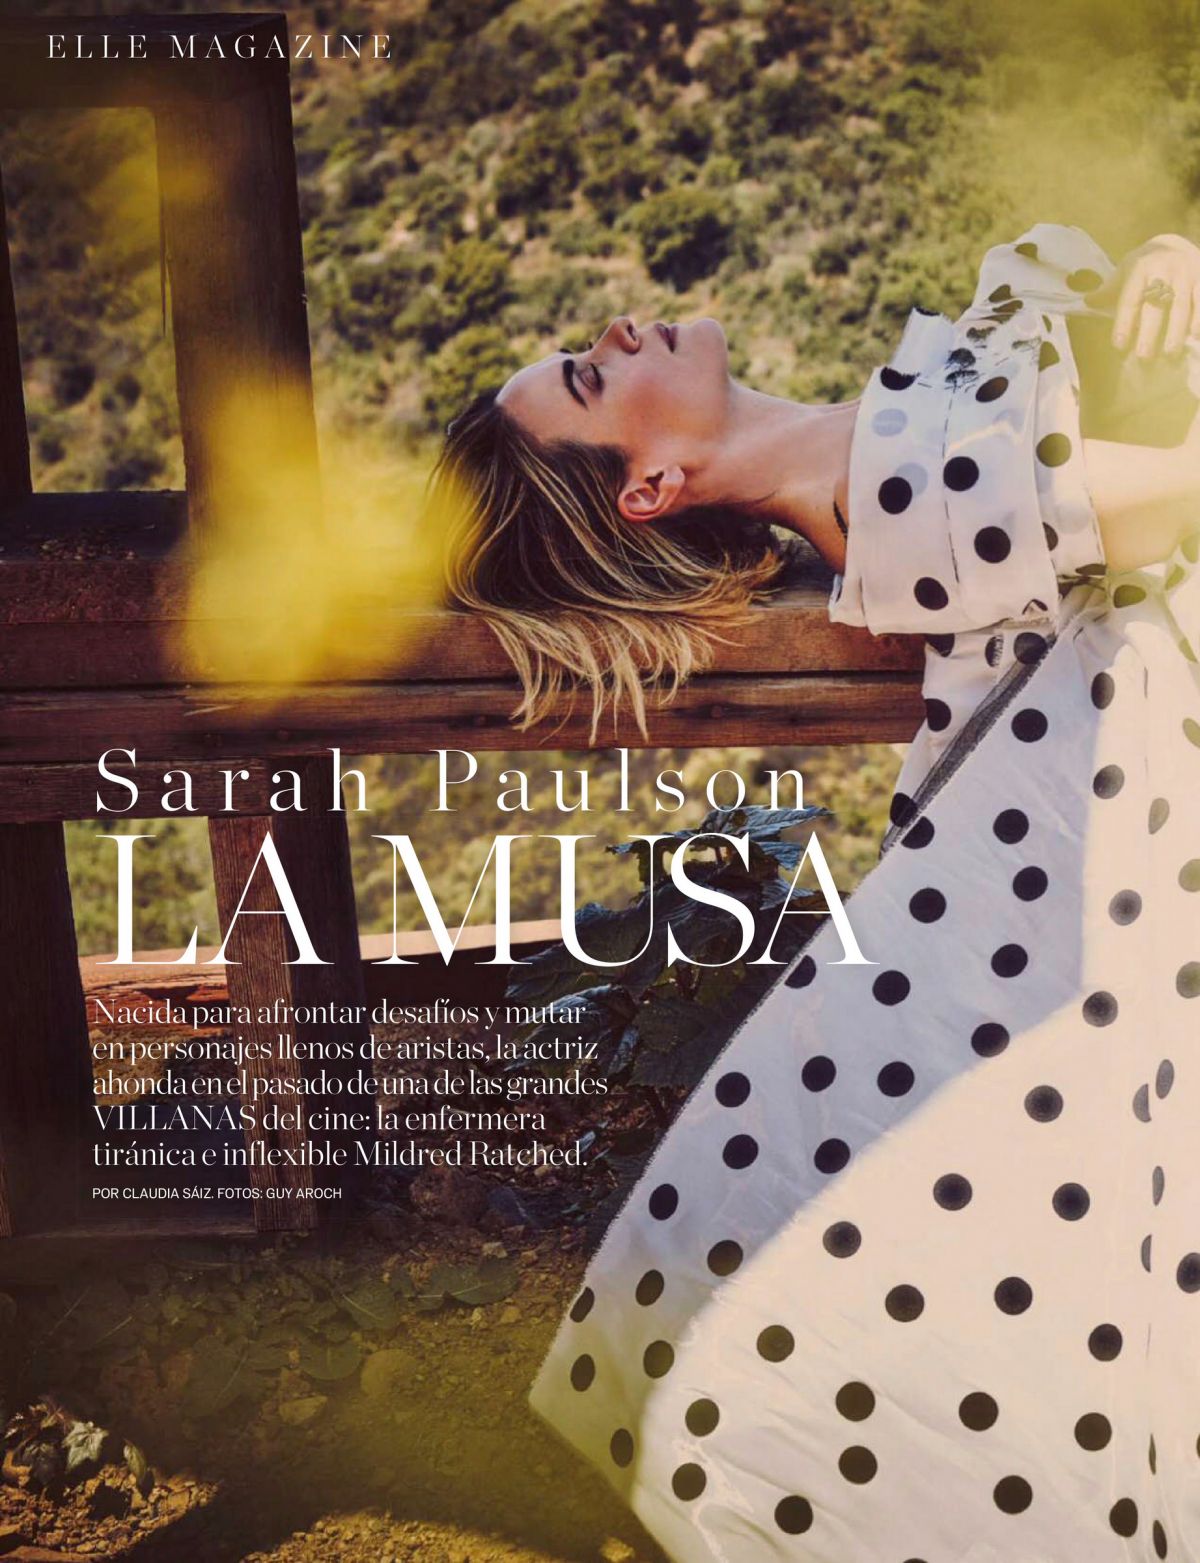 sarah-paulson-in-elle-magazine-spain-september-2020-2.jpg